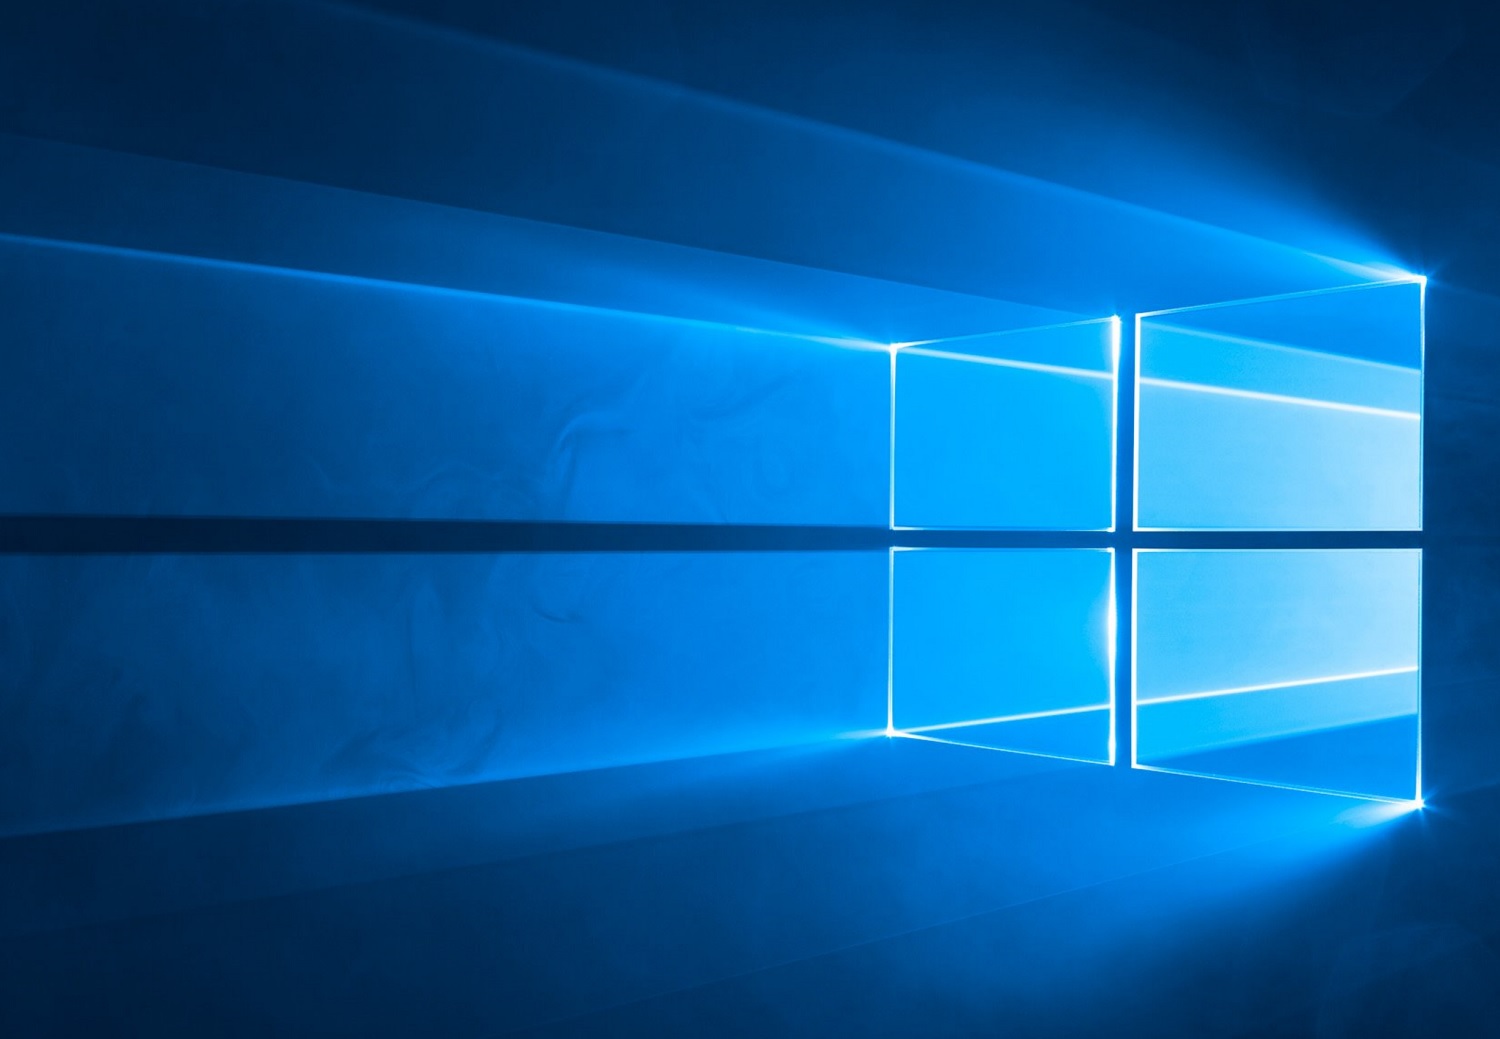 Microsoft Windows 10 Mai 2019-Update ab sofort verfügbar - Notebookcheck.com News1500 x 1039